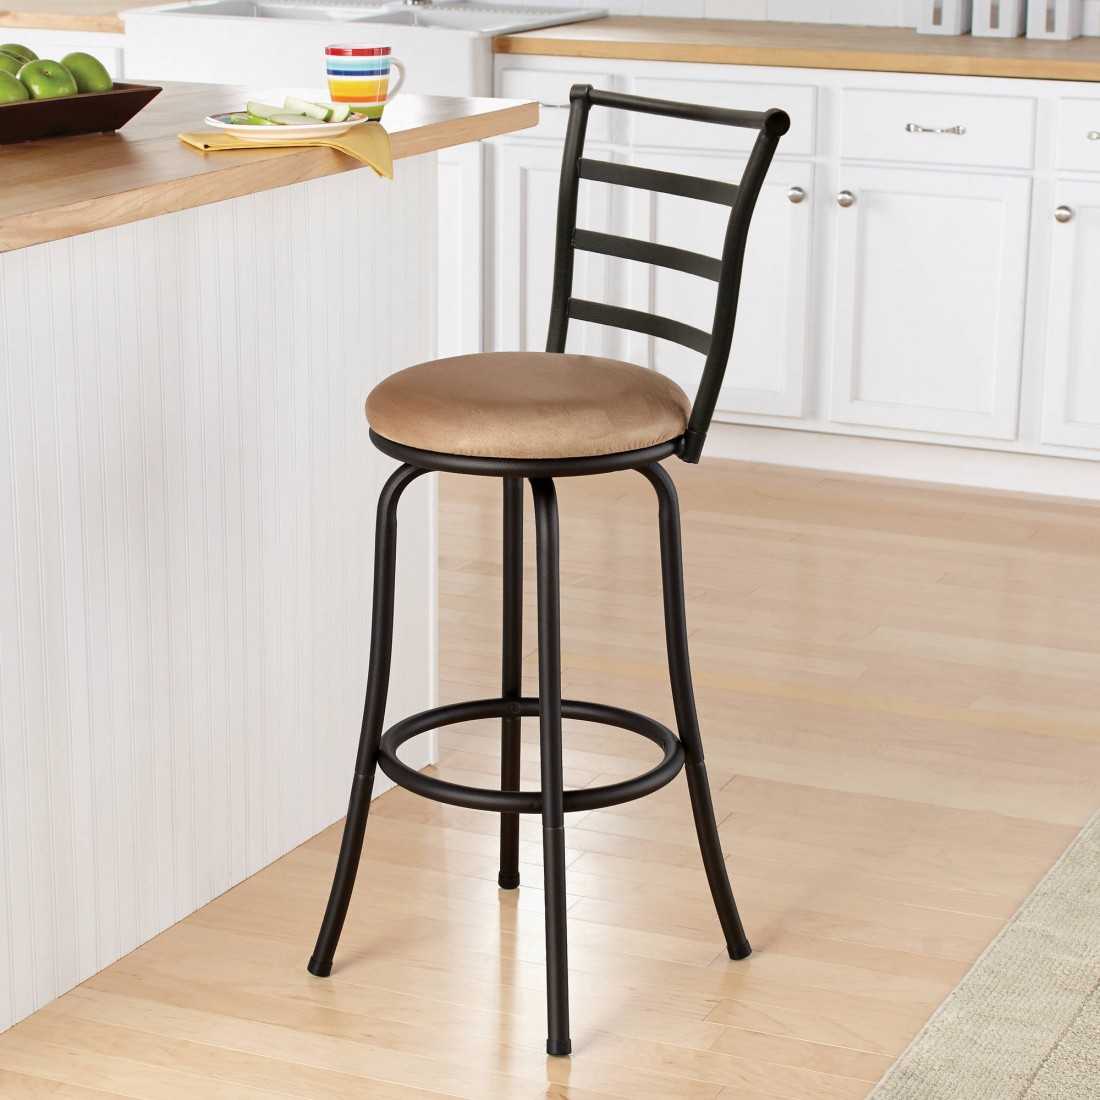 Барные стулья – металлические, деревянные, пластиковые варианты и модели из комбинированных материалов